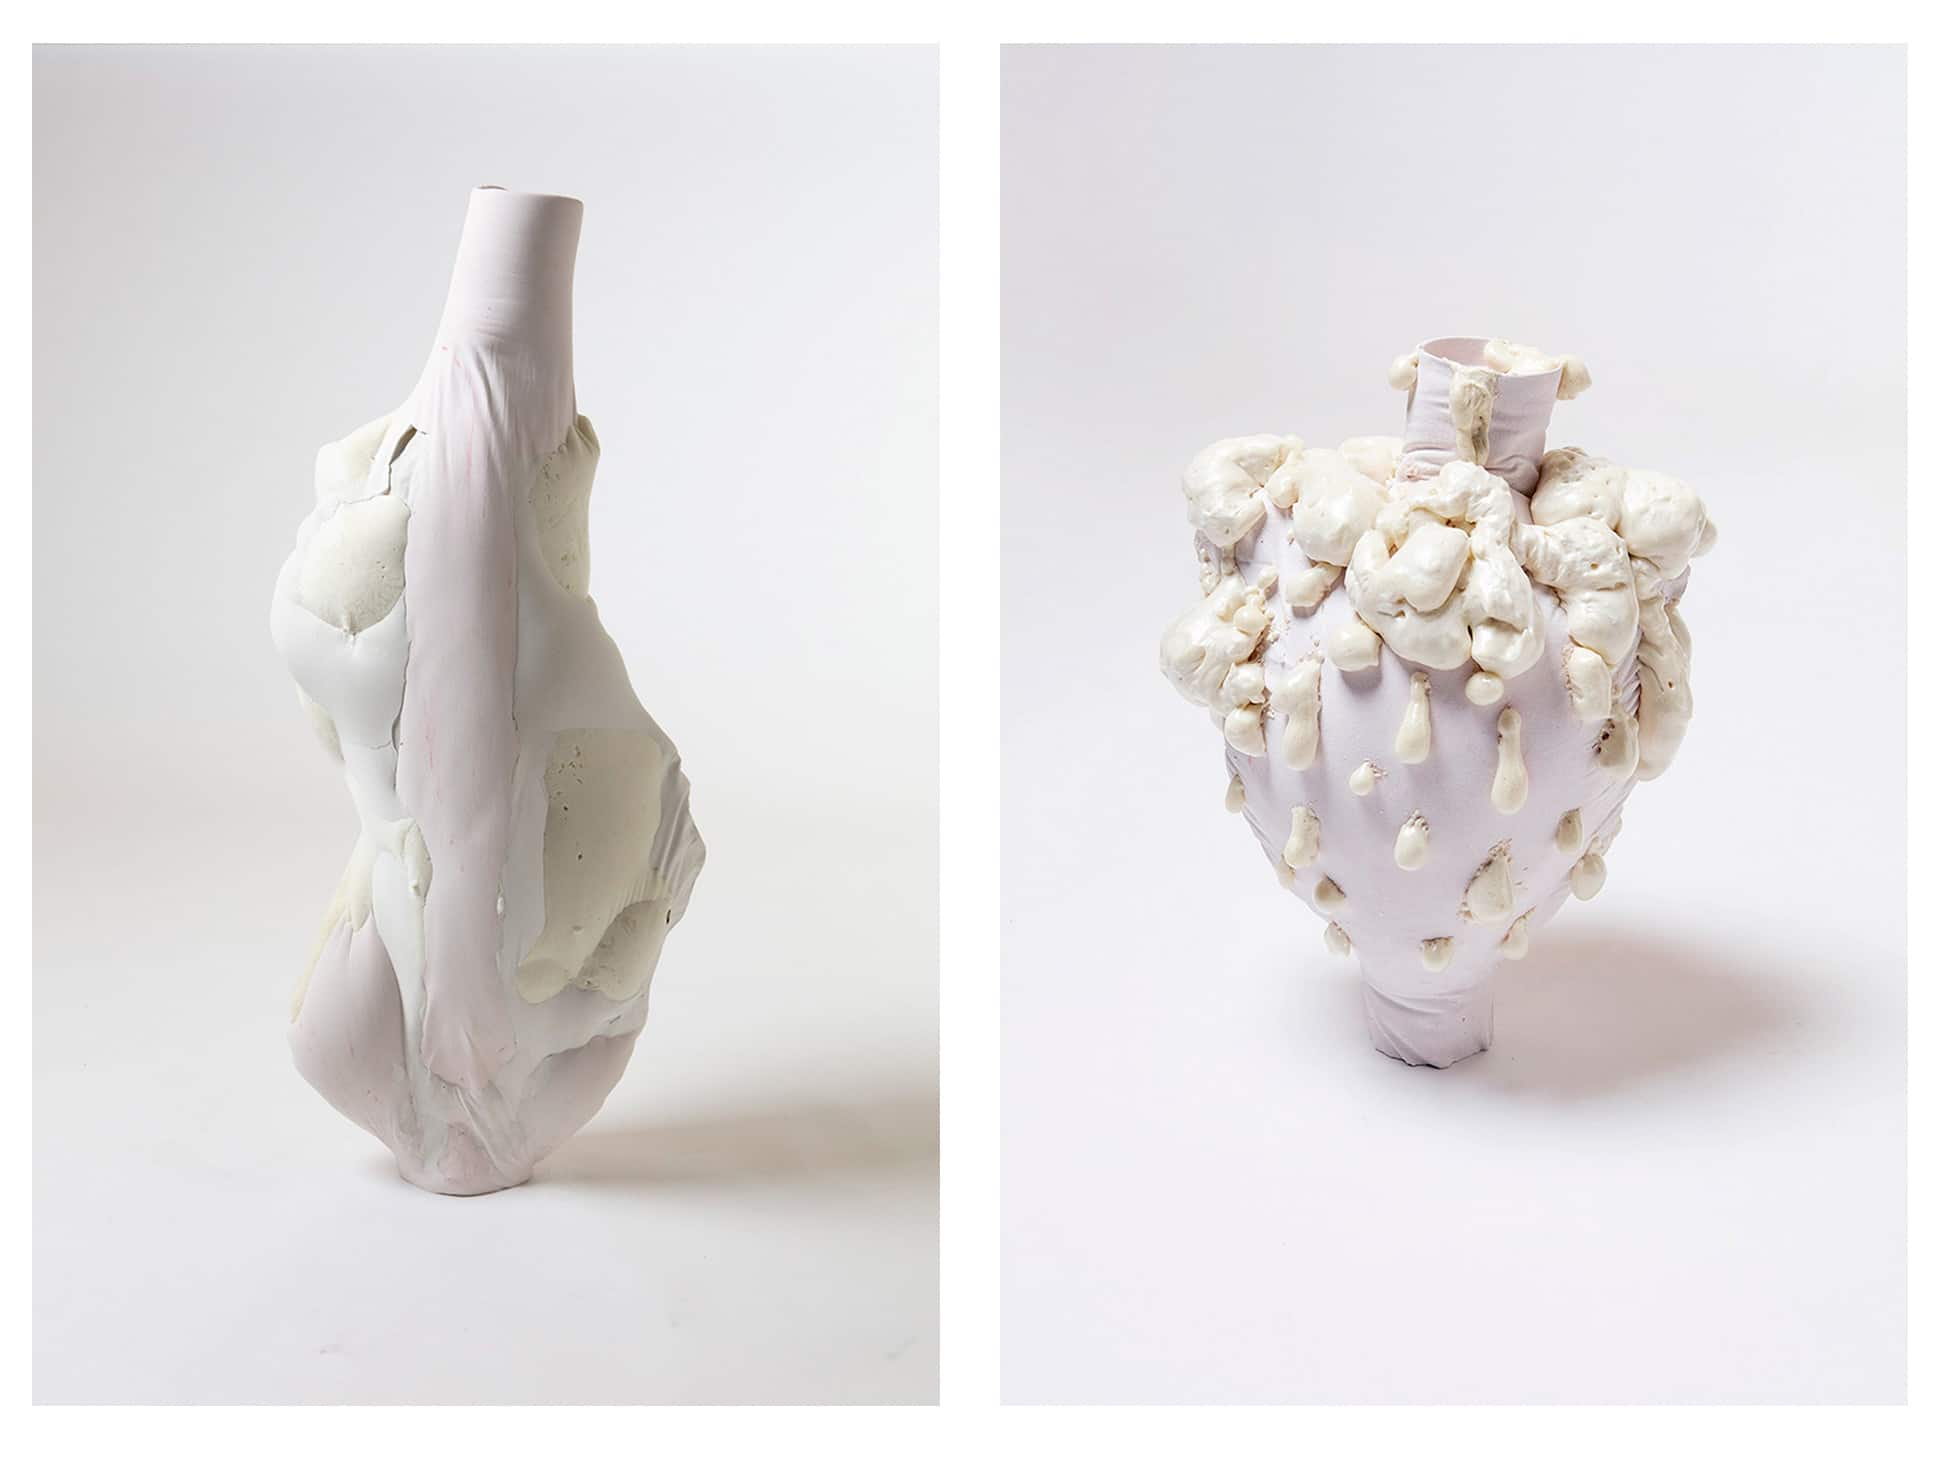 julia-olanders white toxic vases on thursd